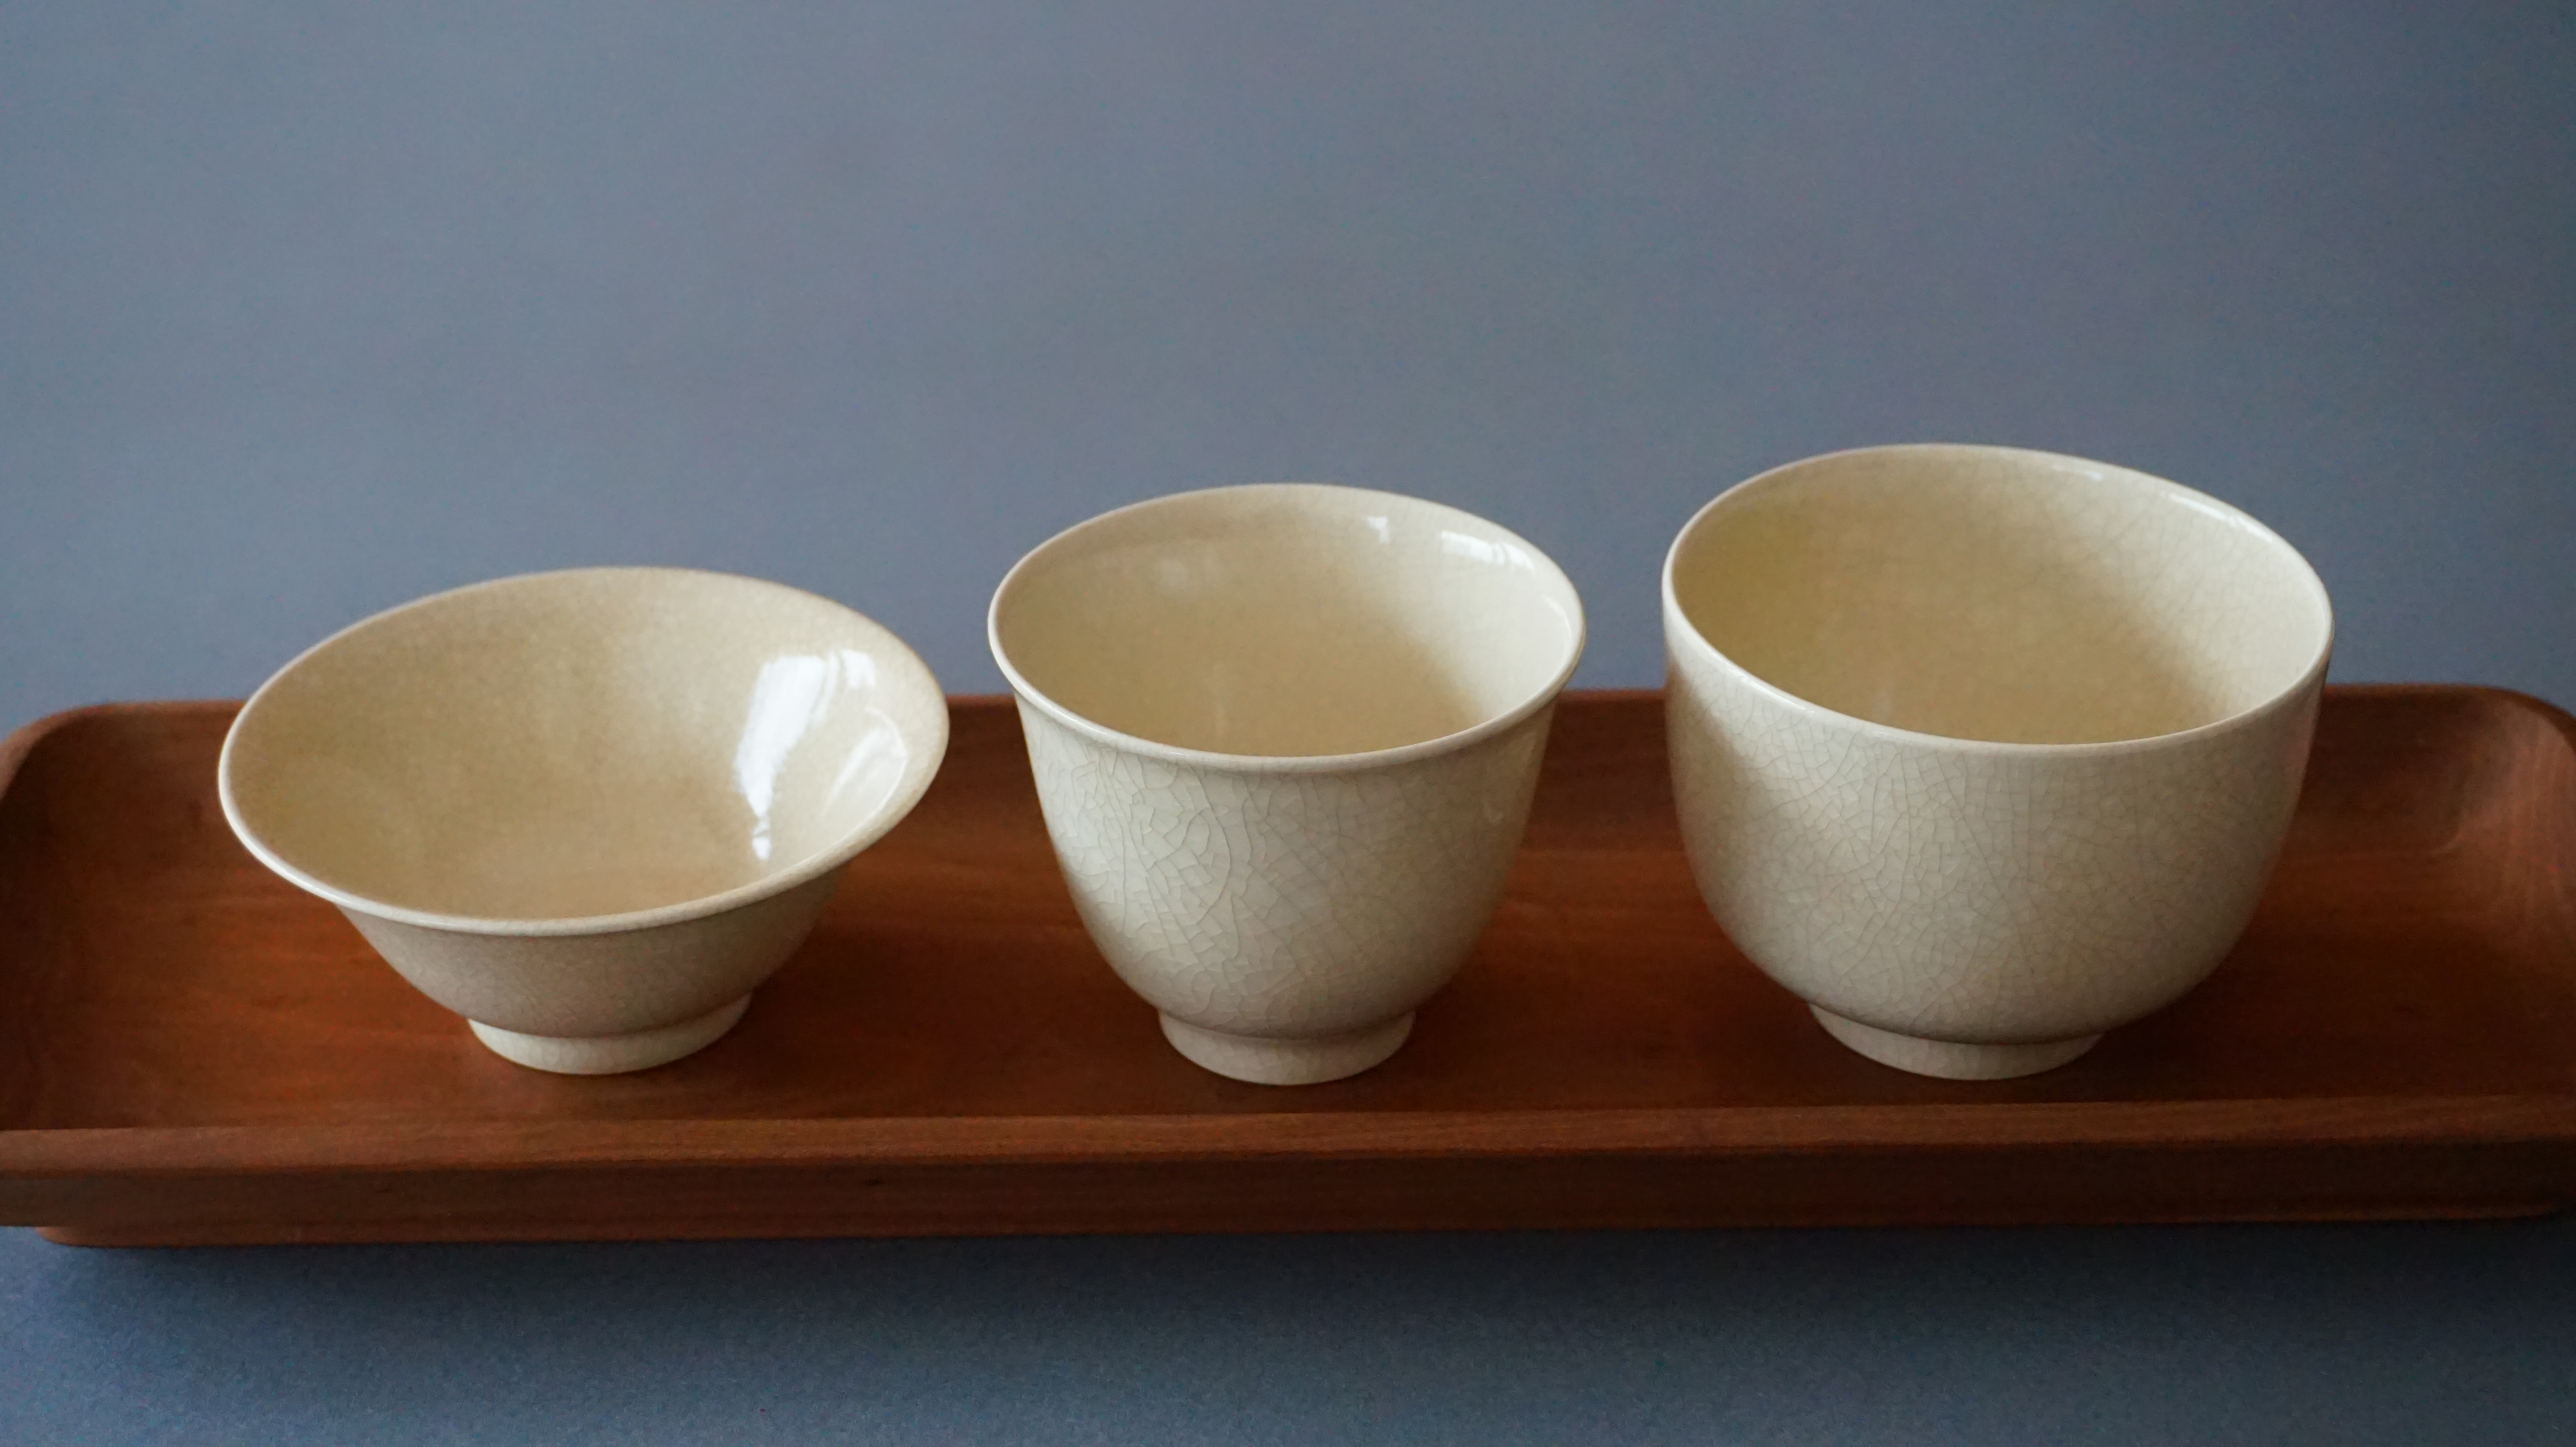 ☆石黒さんの湯呑と汲み出し <br>Tea cup and Kumidashi by Goichiro ISHIGURO